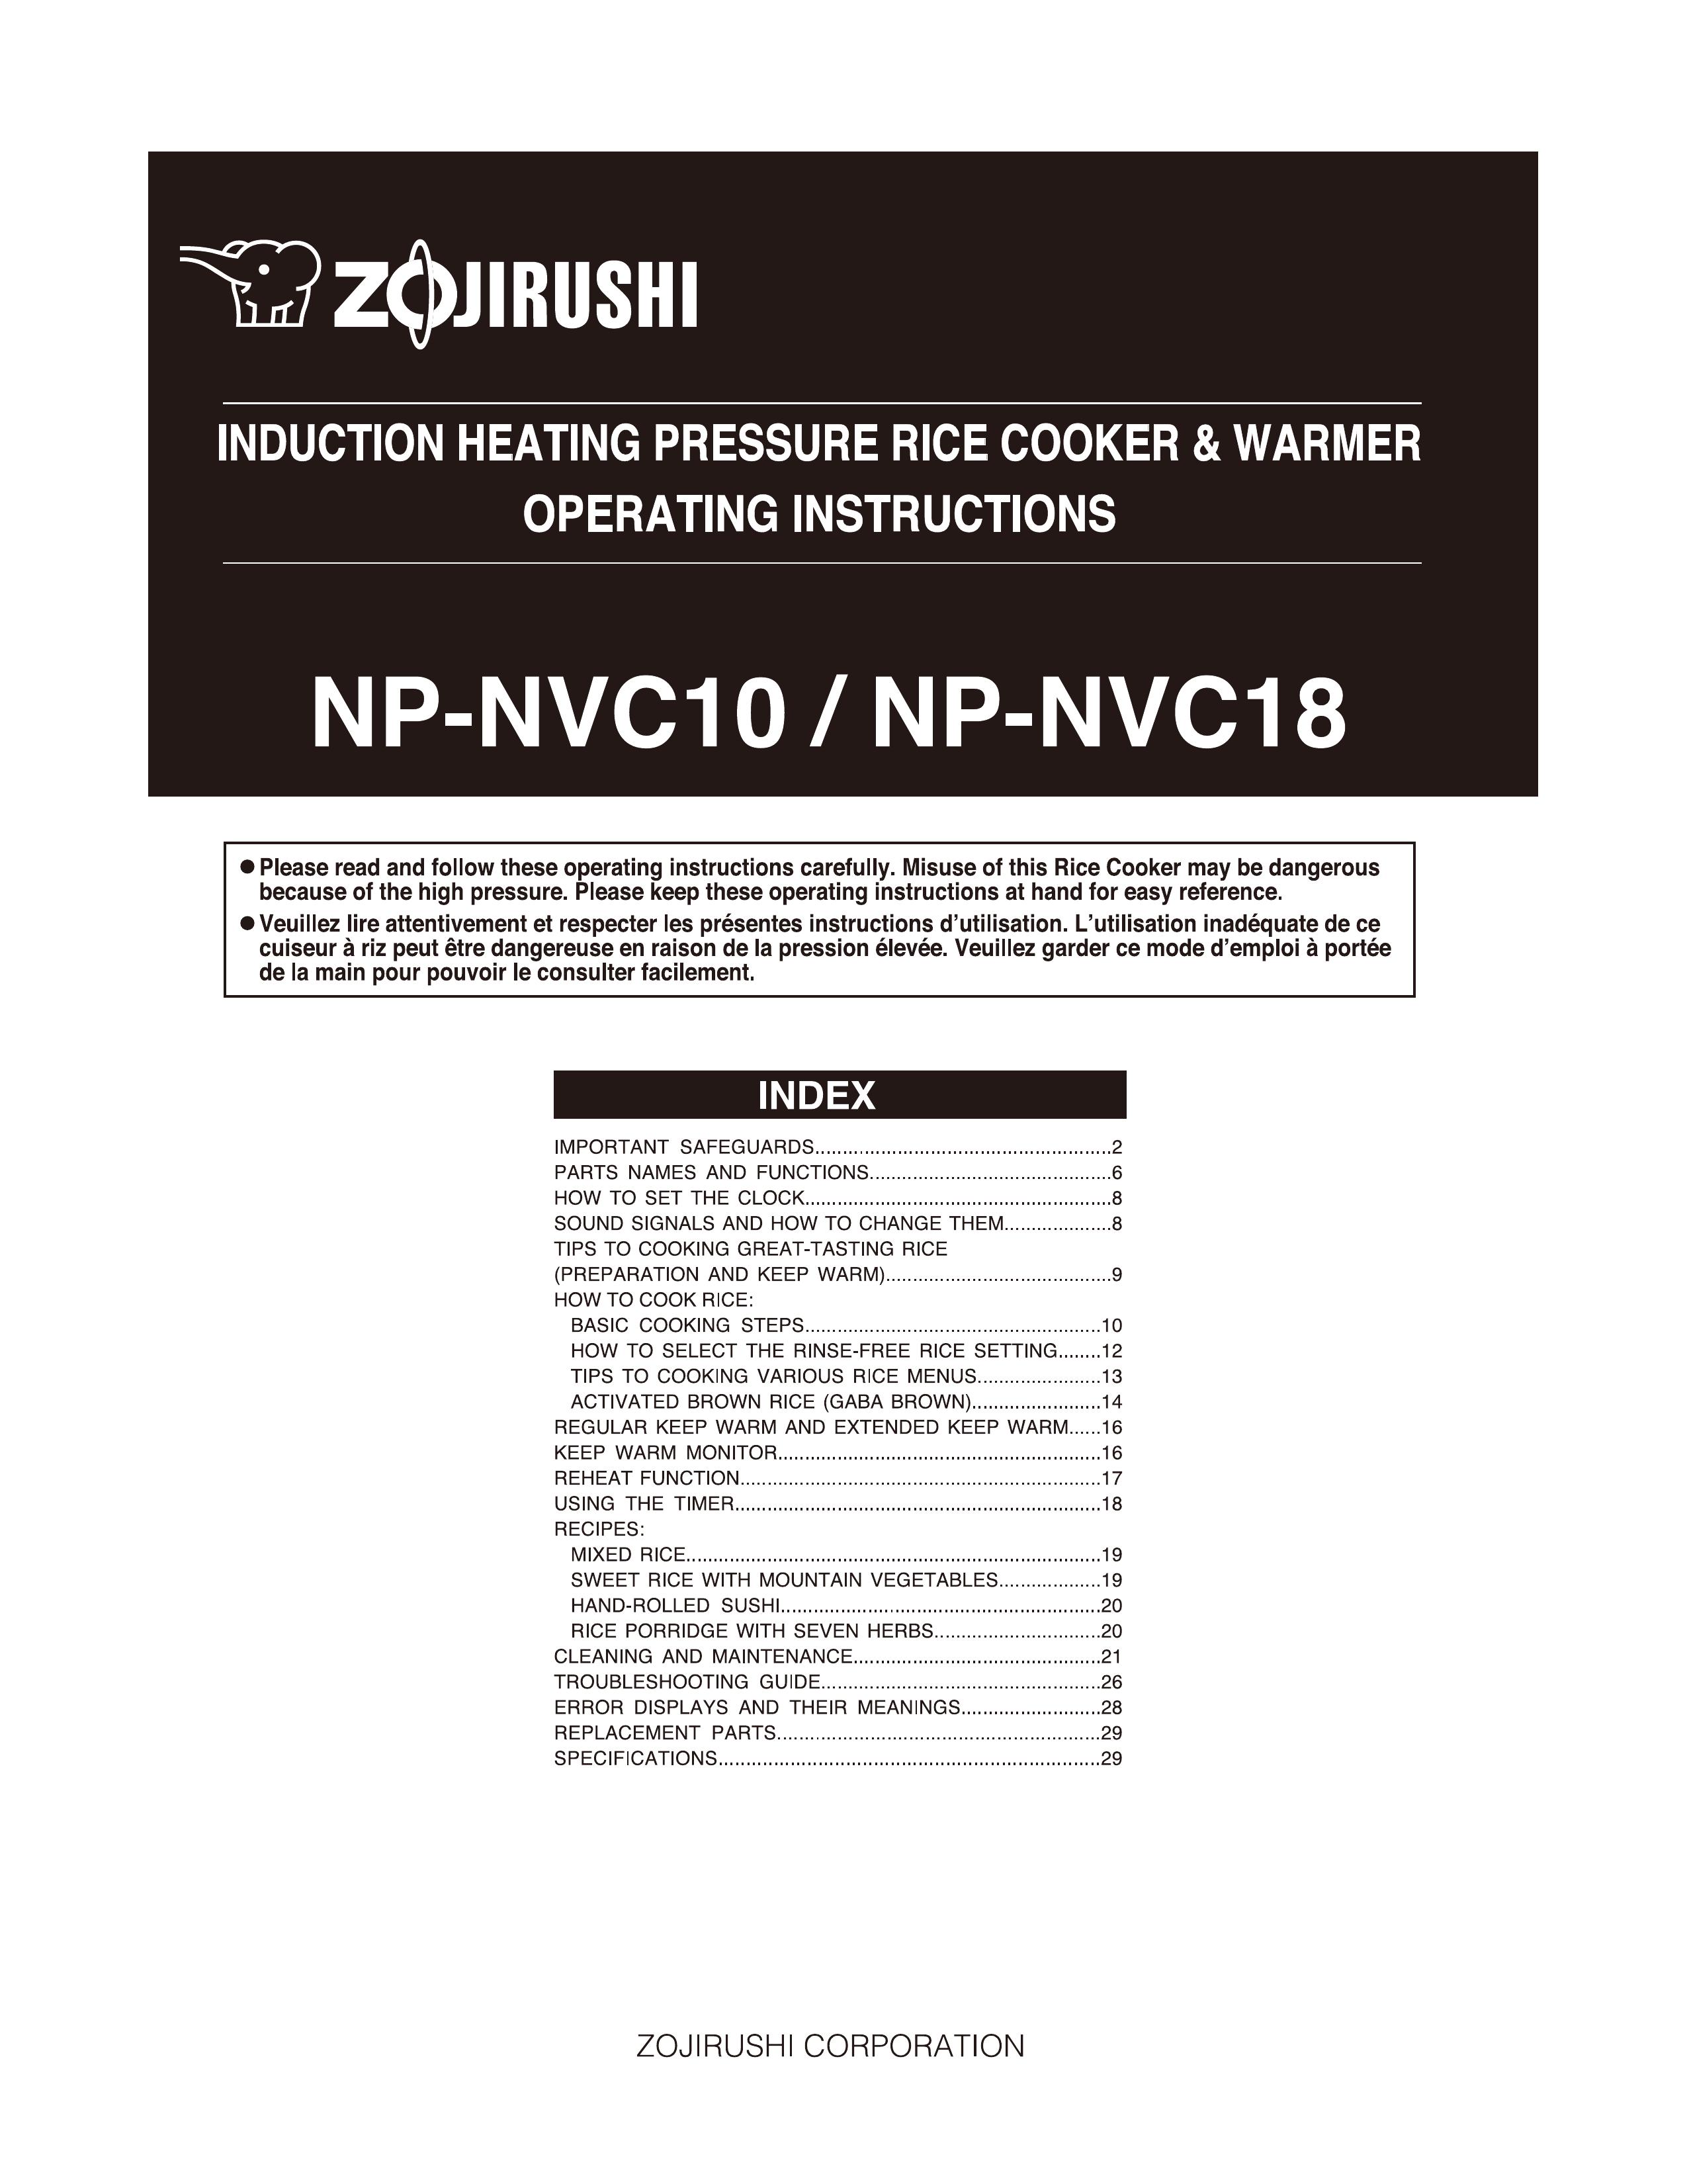 Zojirushi NP-NVC18 Rice Cooker User Manual